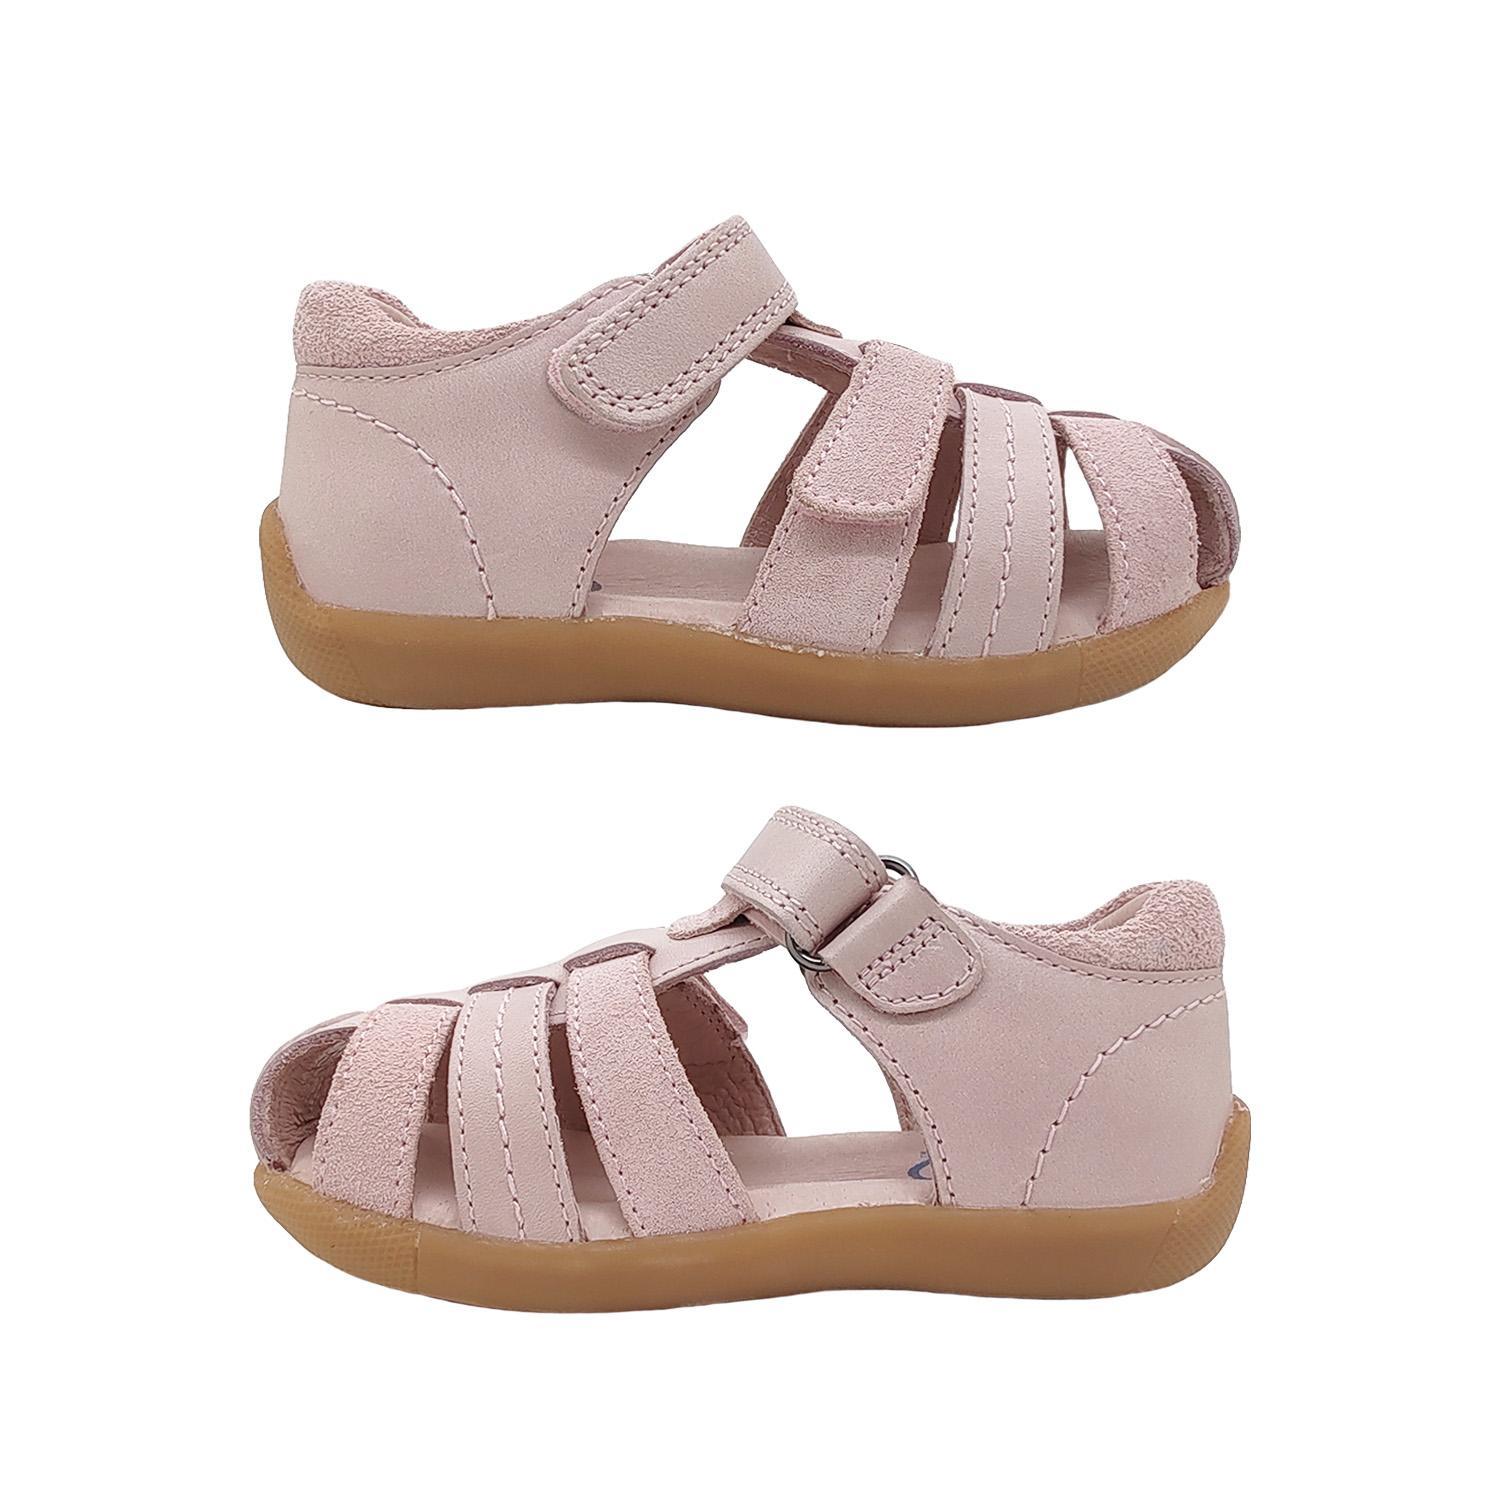 Surefit Alex Little Girls Sandals Leather Upper Toddler Back in Toe Cover Adjust-Pink-27